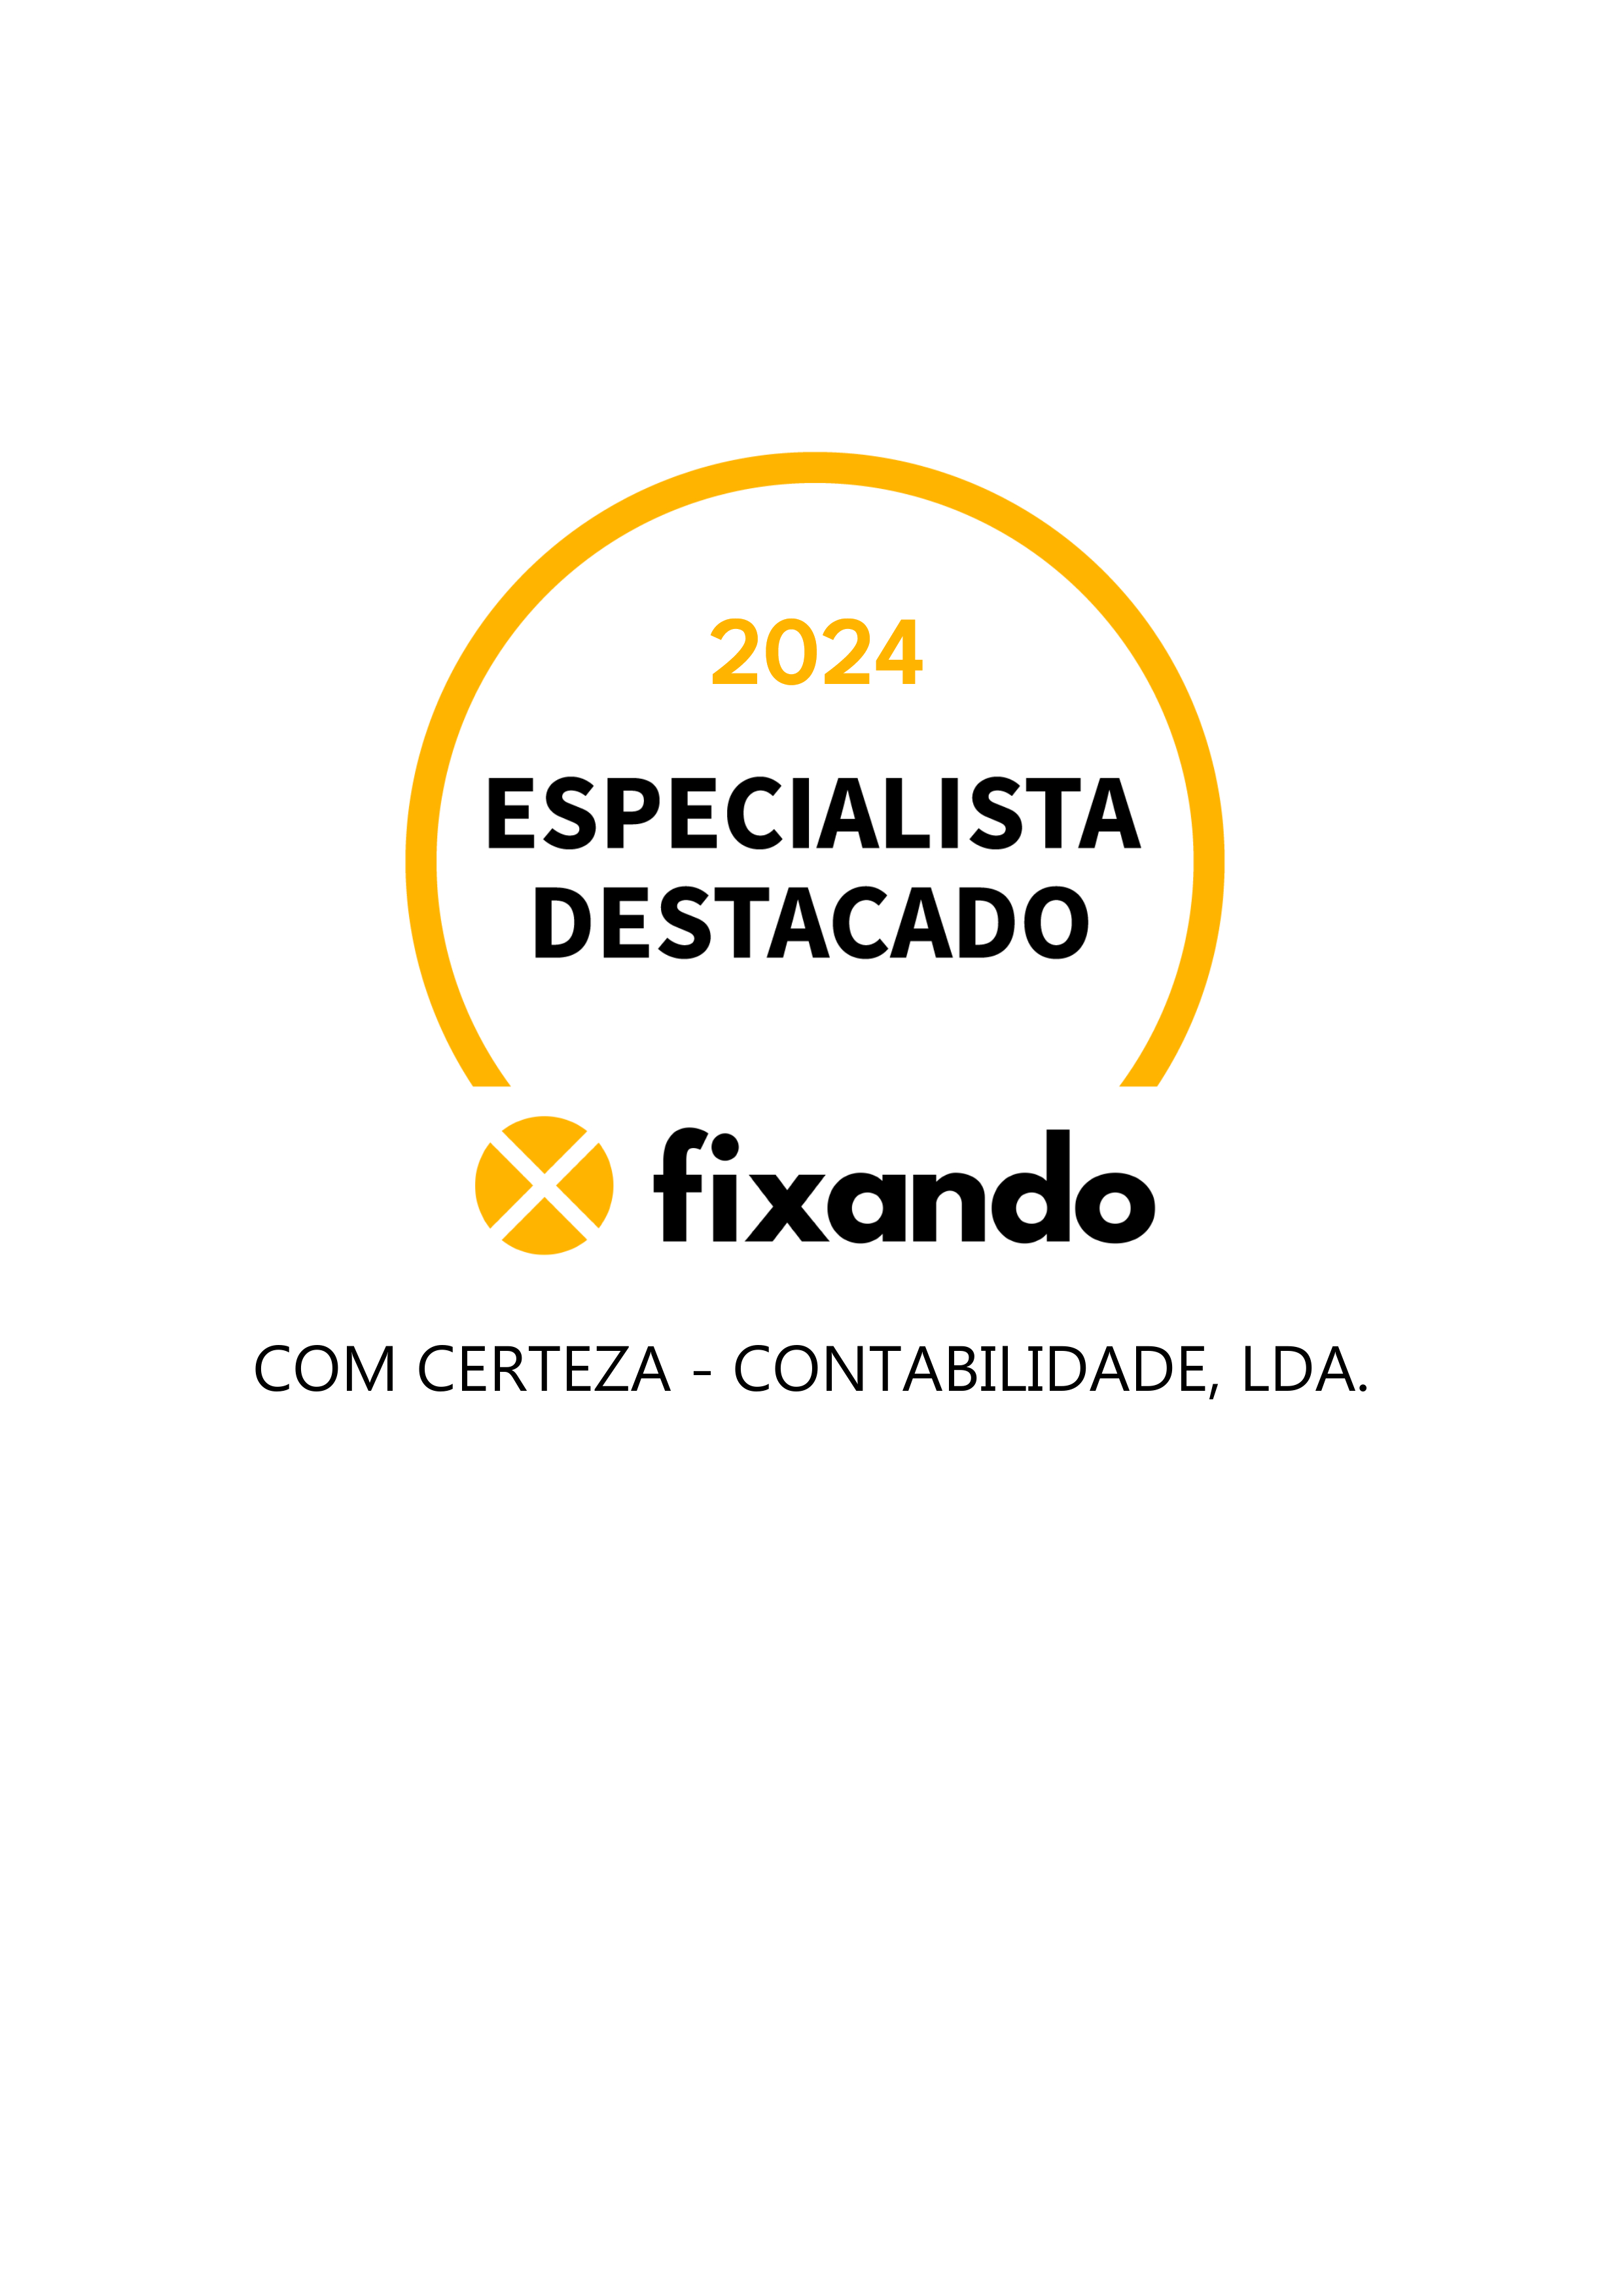 Com Certeza - Contabilidade, Lda. - Vila Franca de Xira - Consultoria e Aconselhamento de Segurança Social